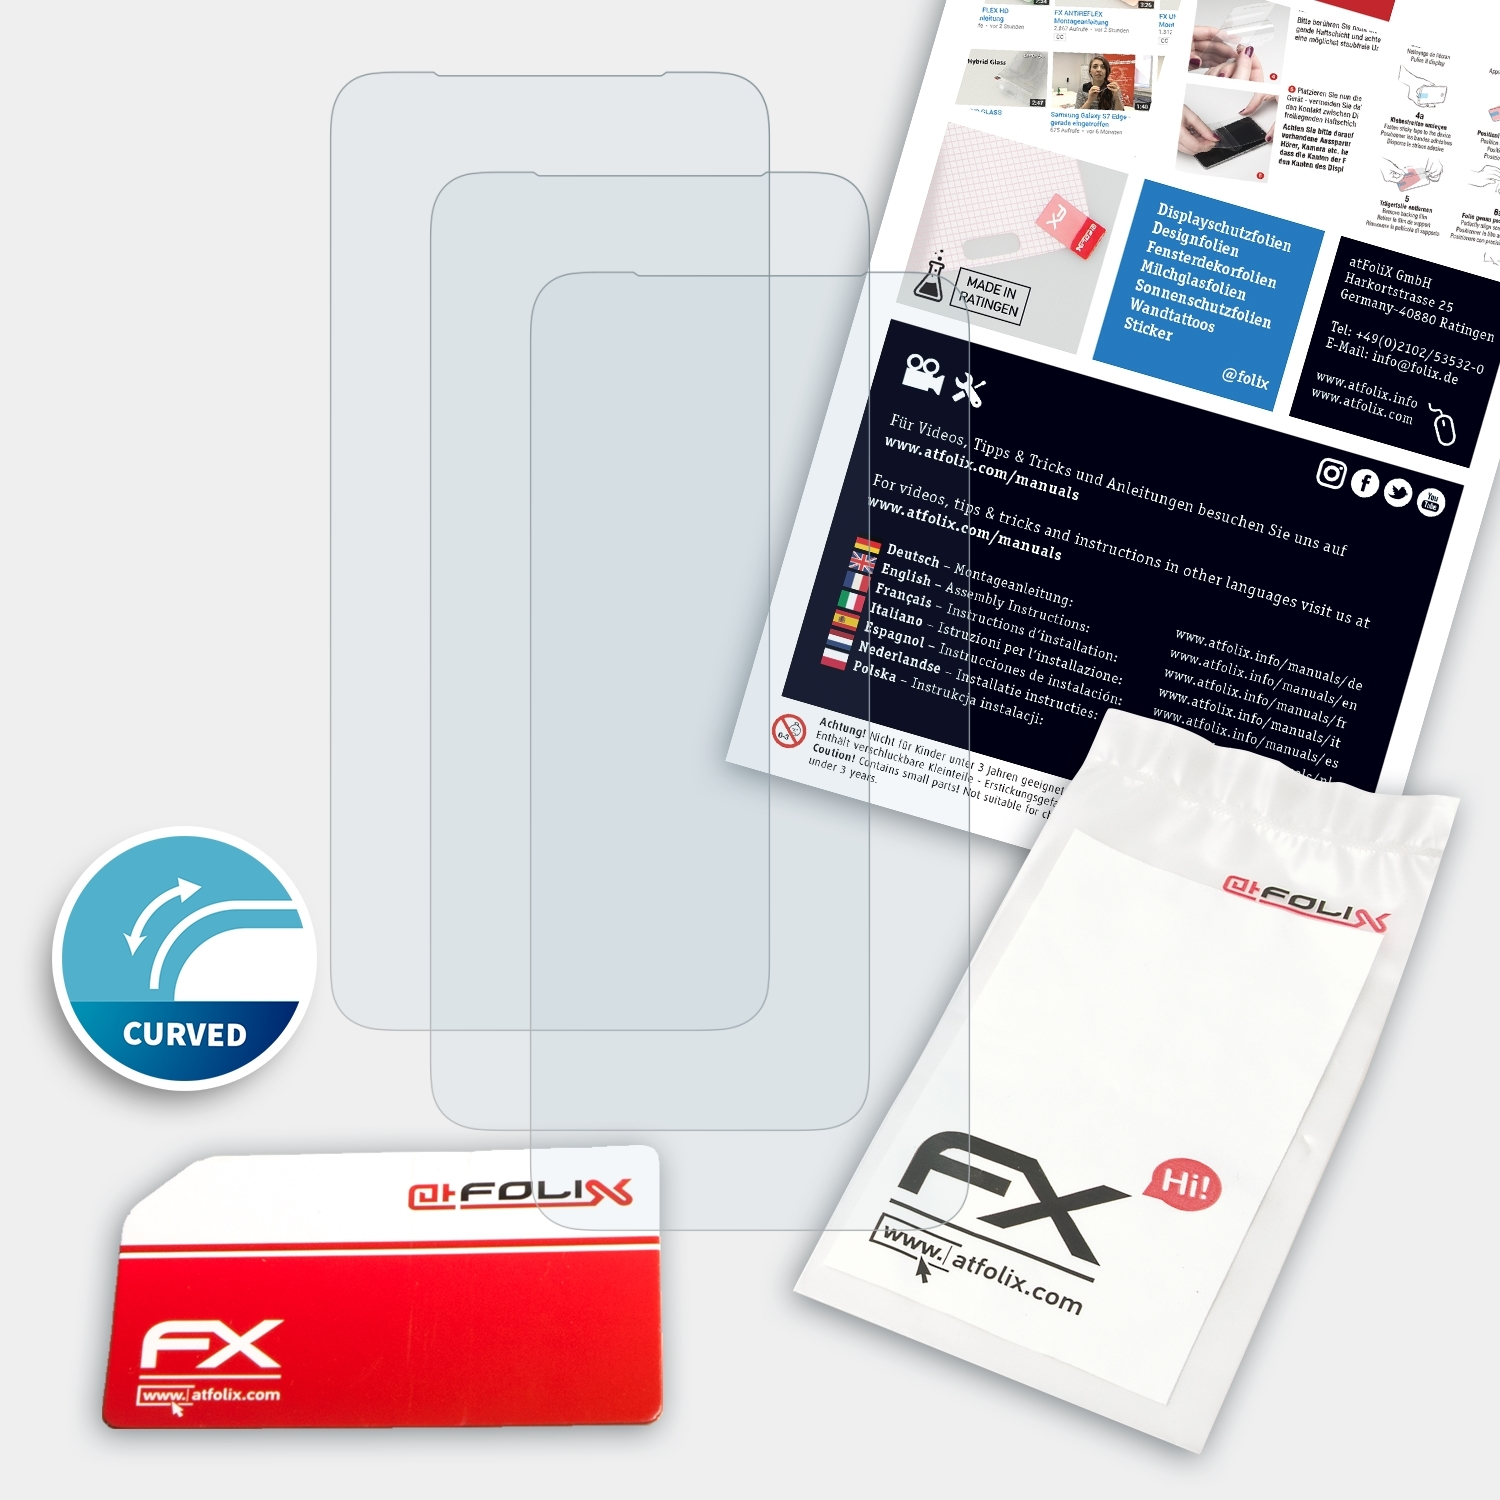 FX-ActiFleX Displayschutz(für ATFOLIX 3x Pro) F11 Oppo